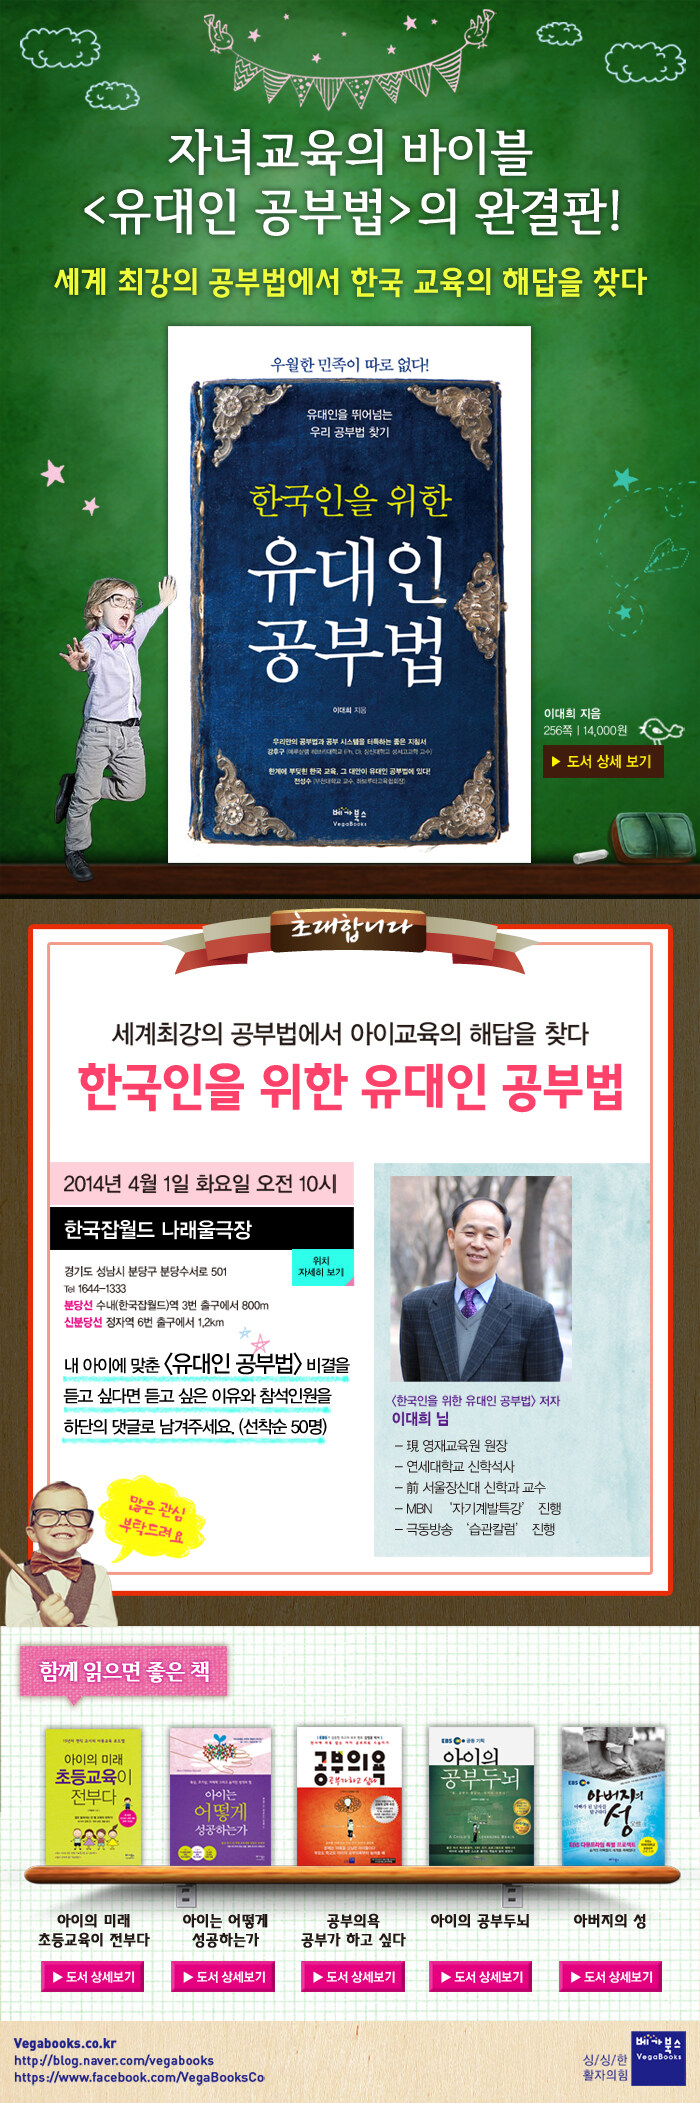 한국인을 위한 유대인 공부법 저자 강연회